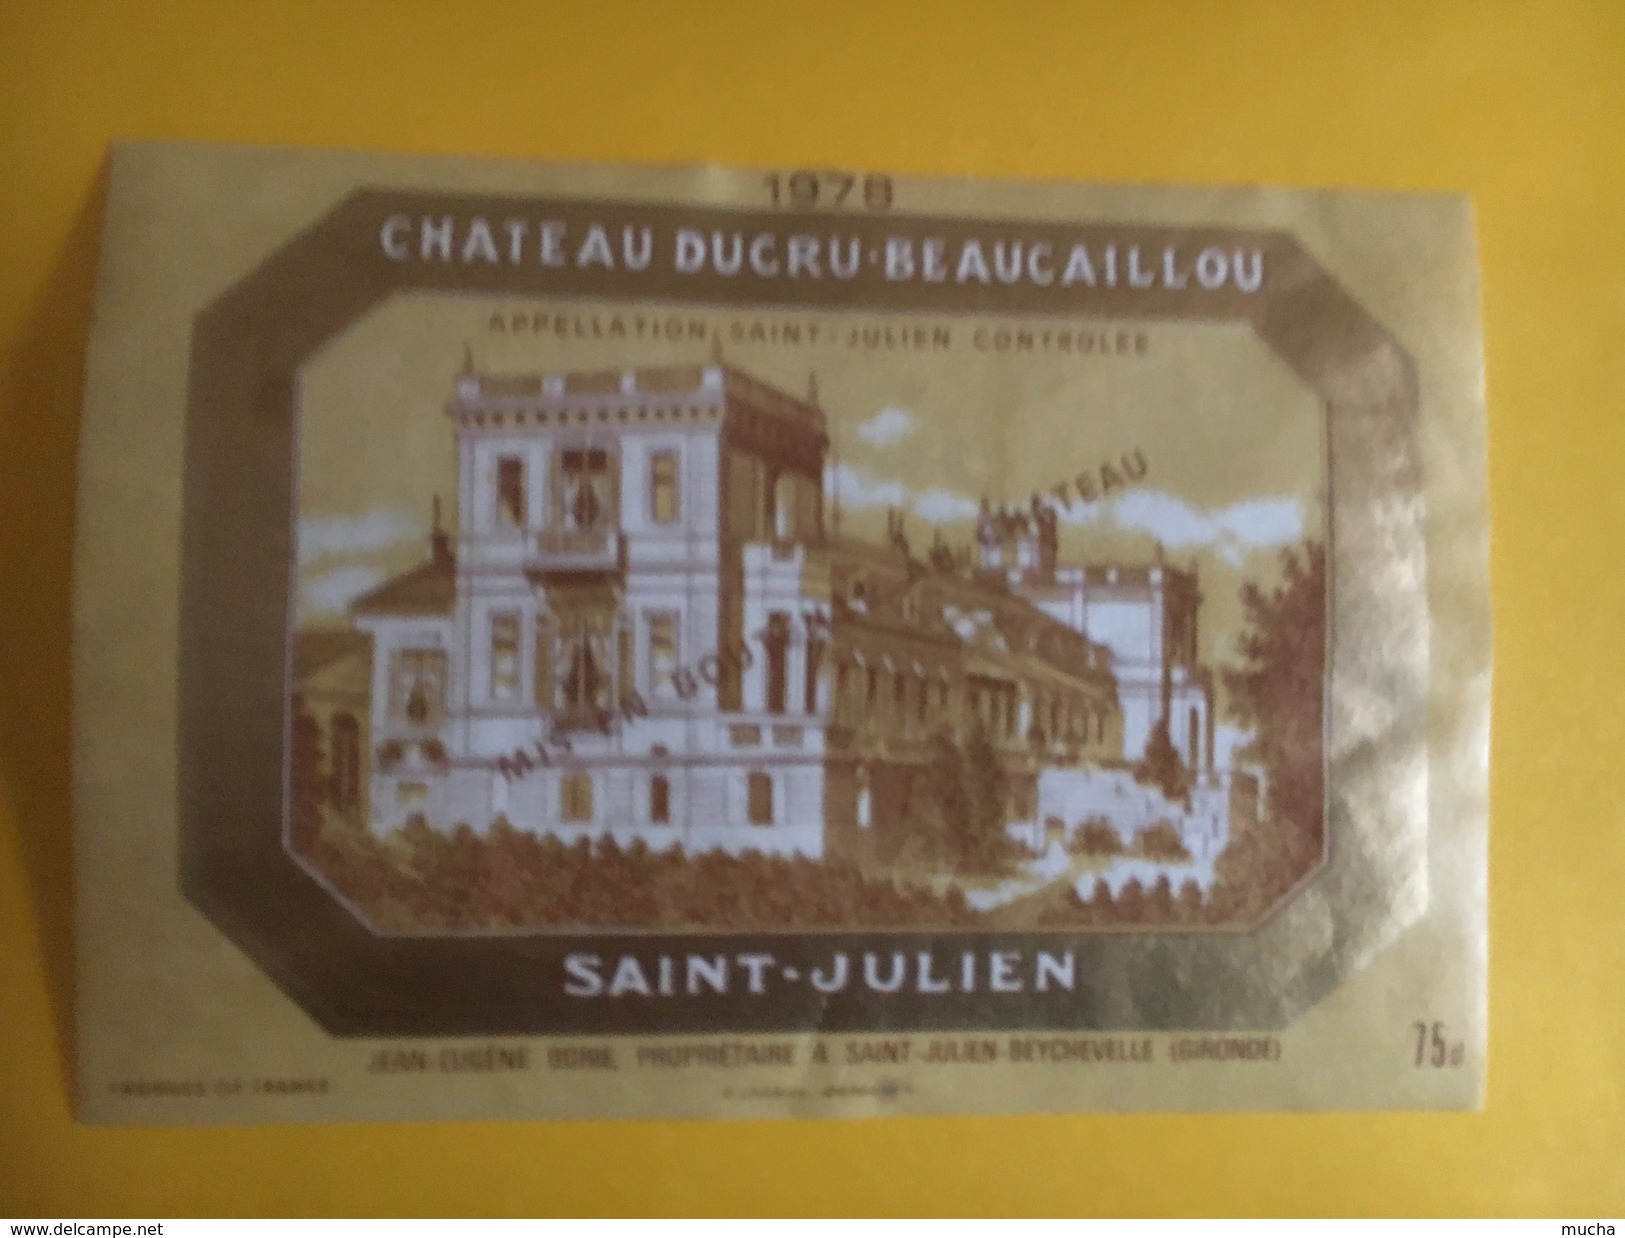 6053 - Château Ducru-Beaucaillou 1978 Saint-Julien - Bordeaux